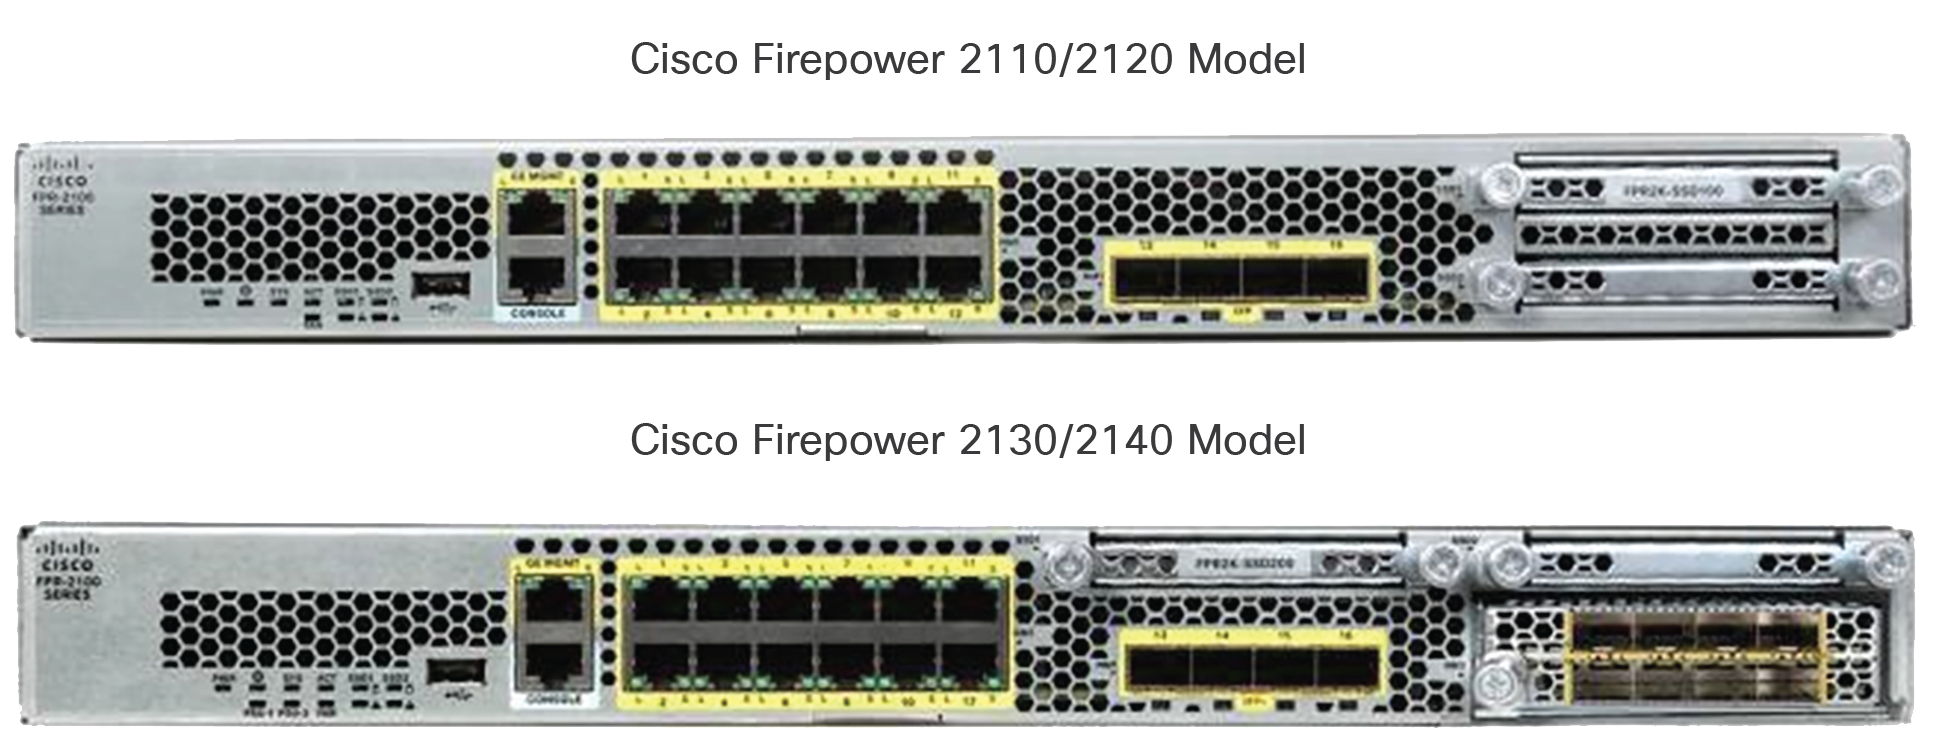 Cisco Firepower 2100 Series appliances